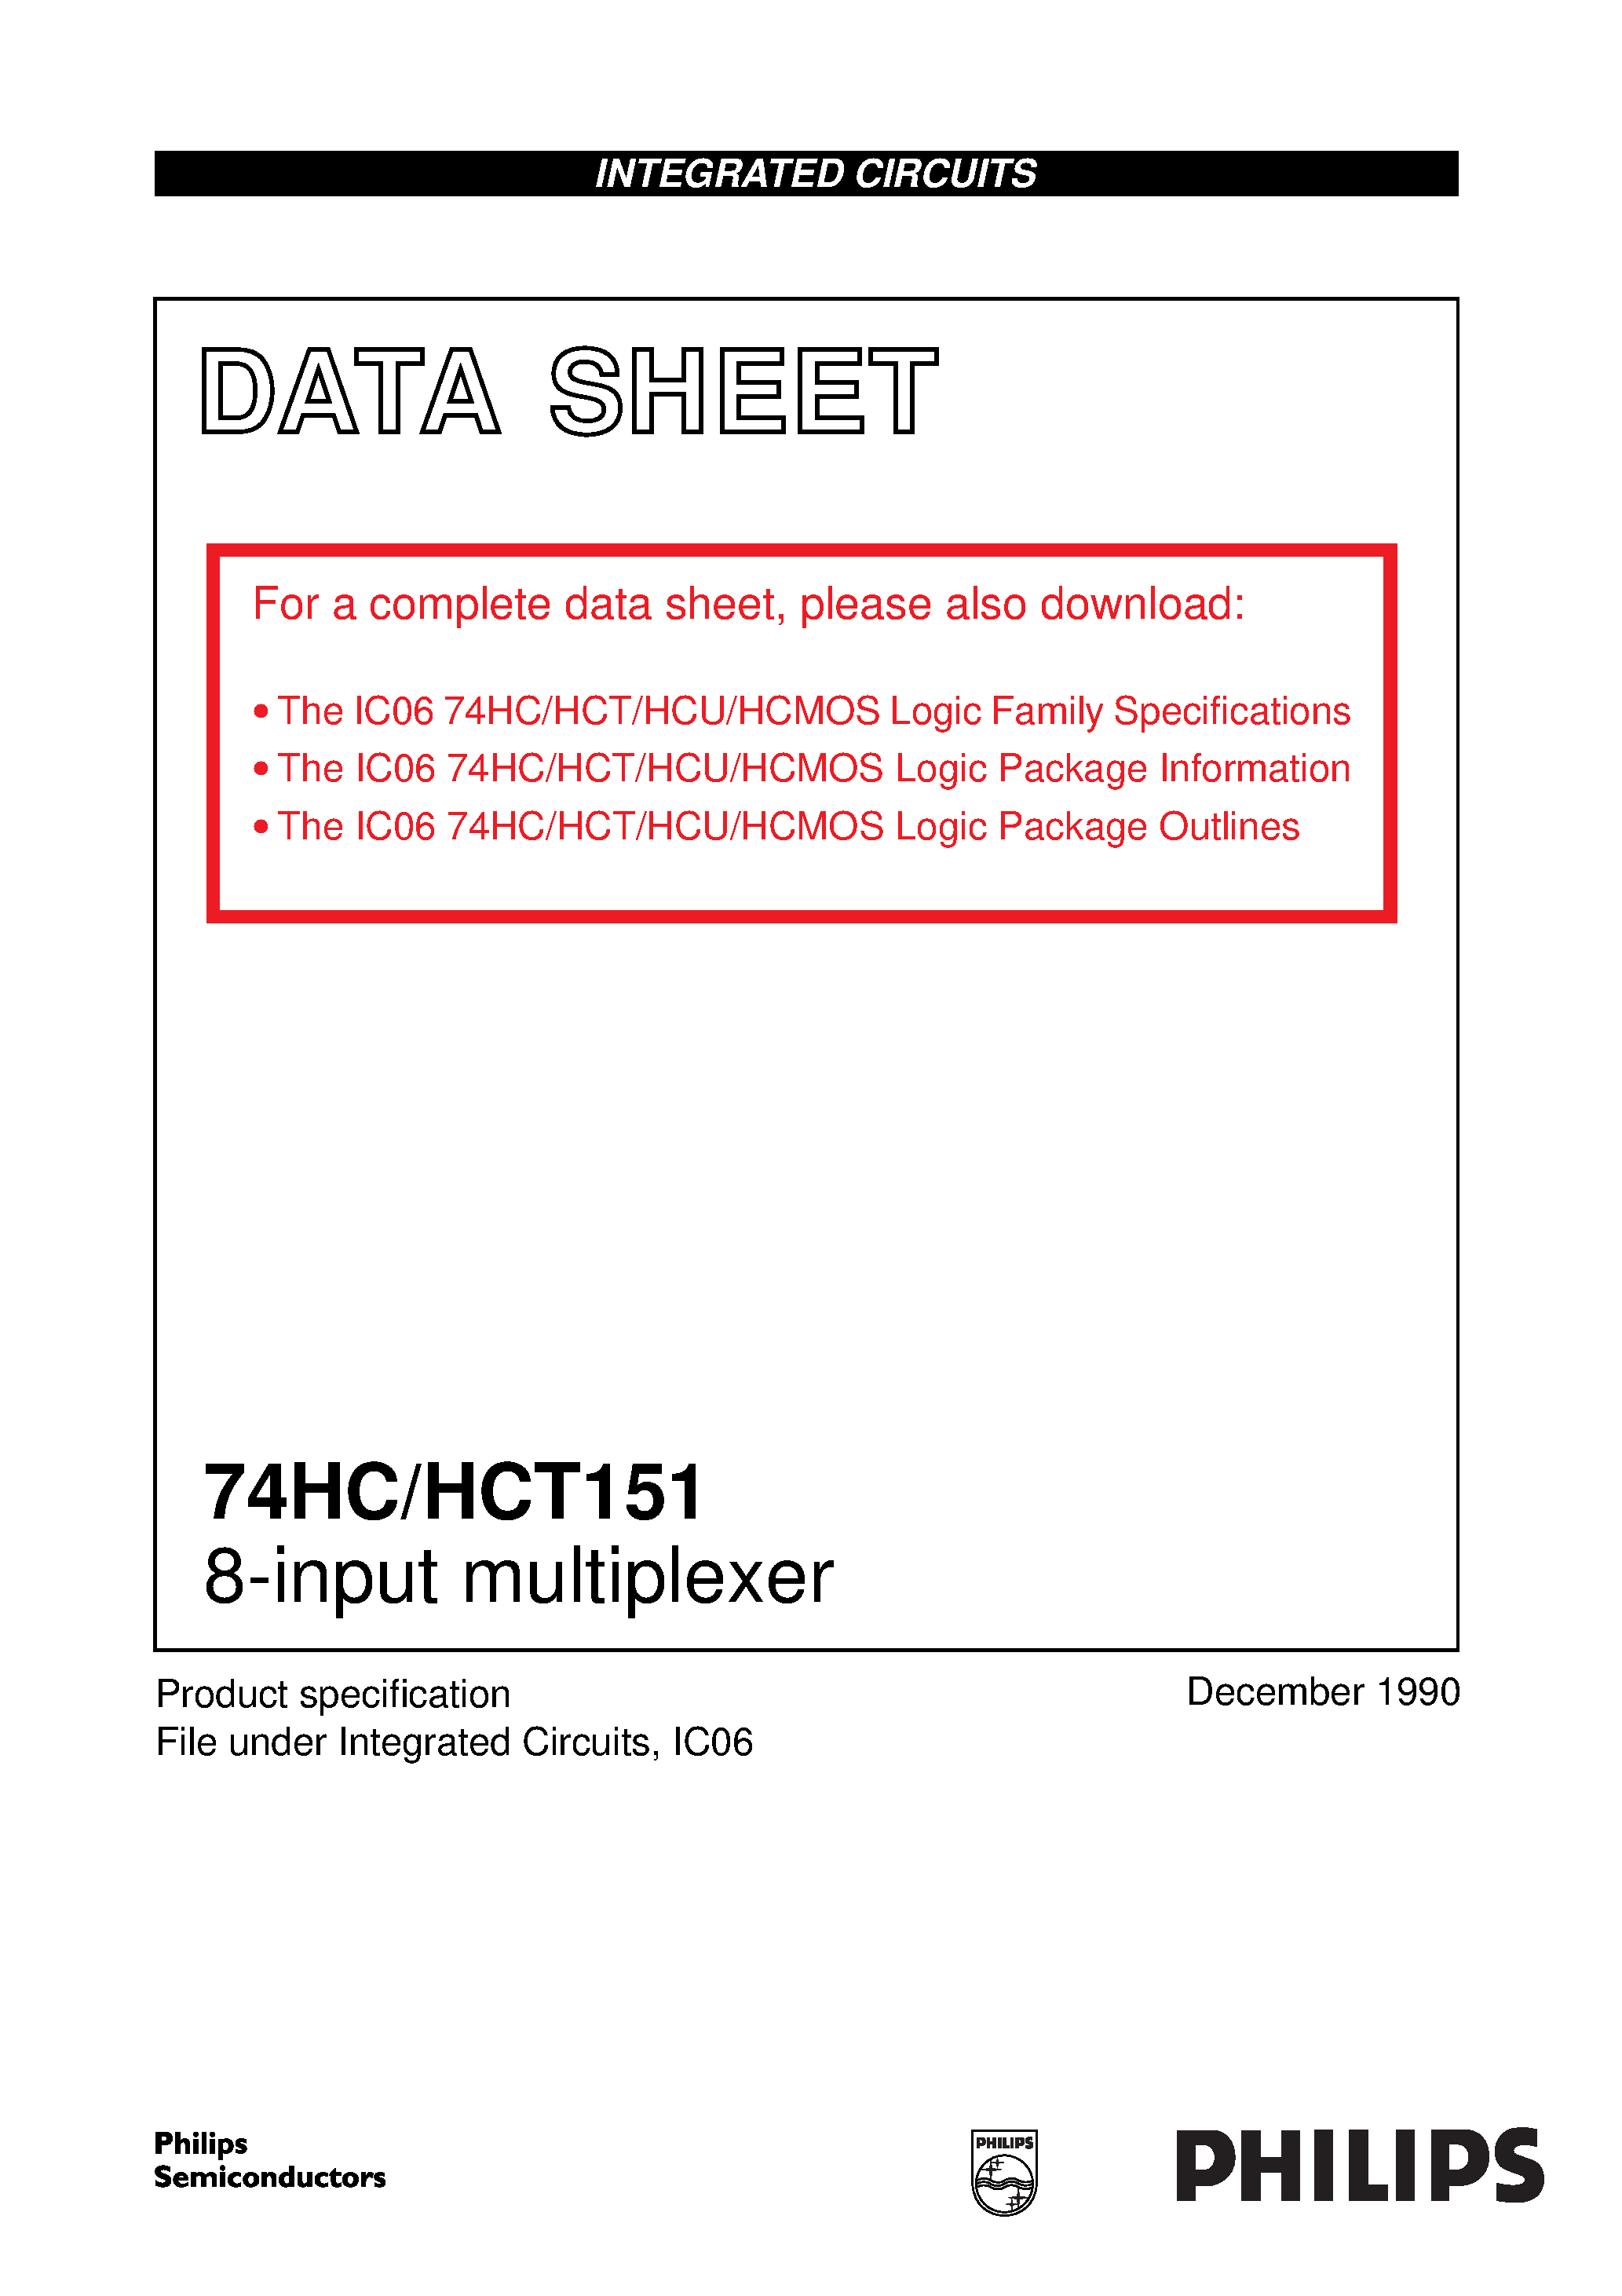 Datasheet 74HC_HCT151 - 74HC/HCT151 8-input multiplexer page 1